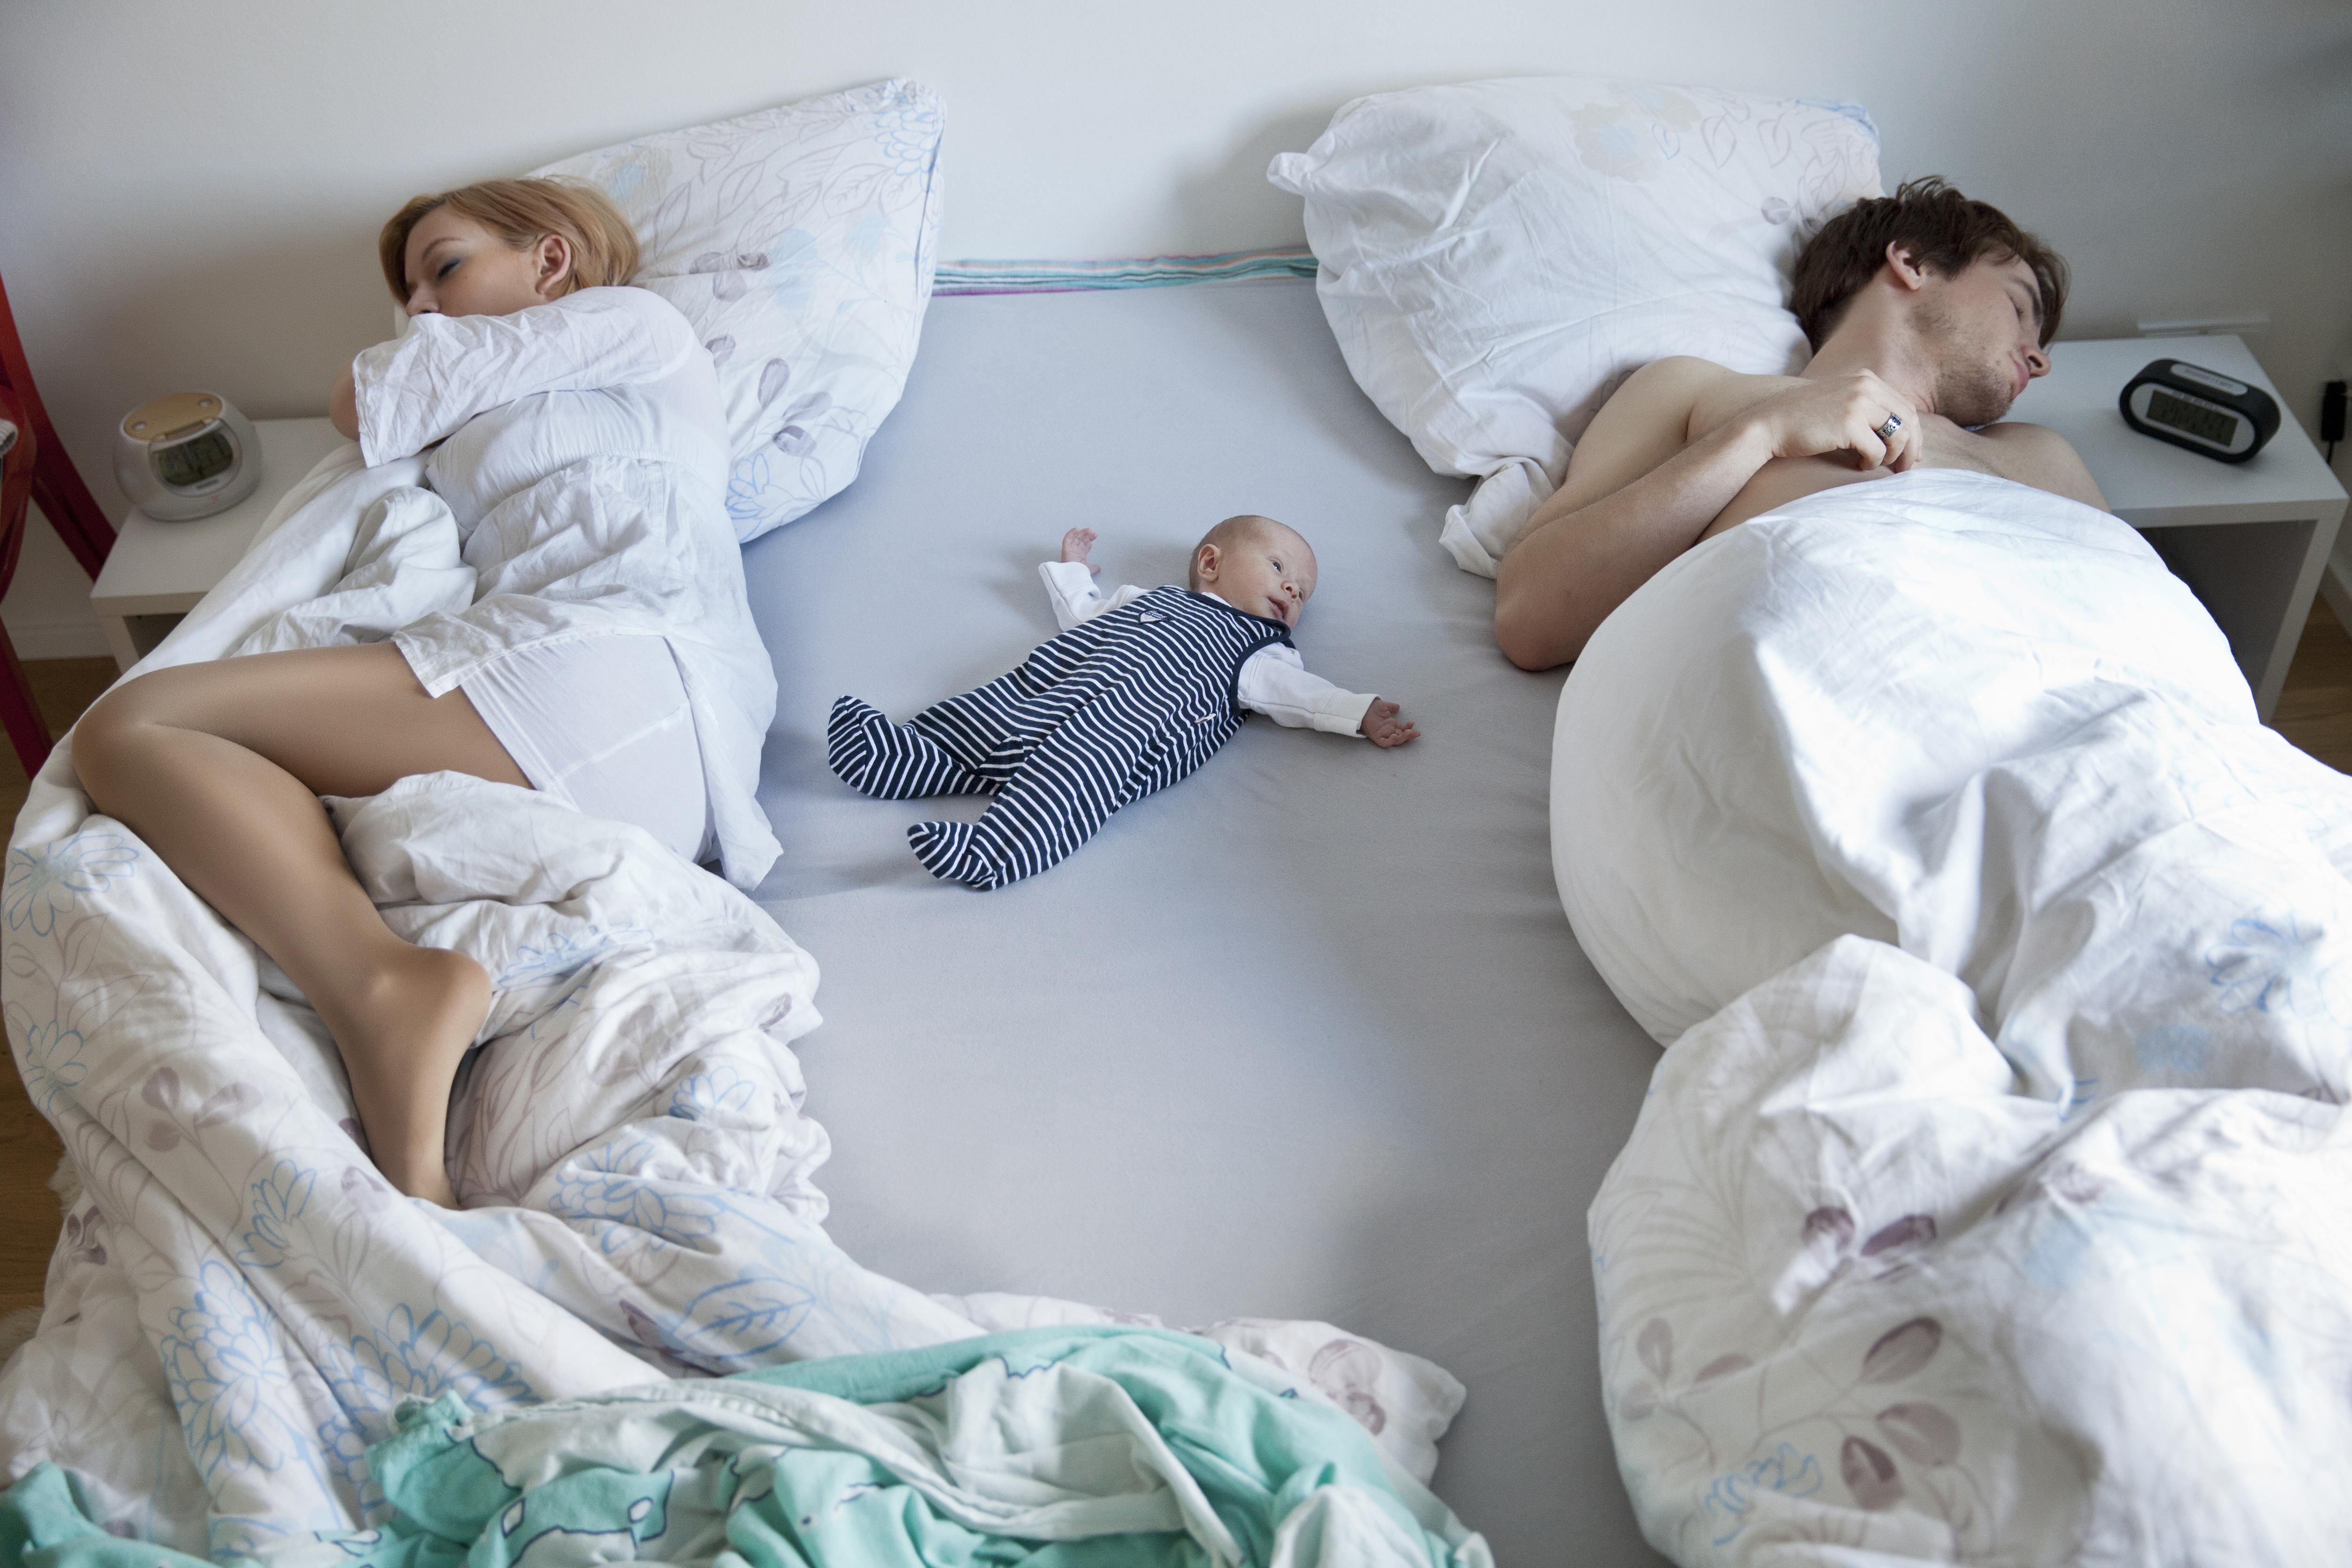 Что делаешь спишь малыш. Кровать для детей. Ребенок в кровати с родителями. Совместный сон ребенка с родителями.